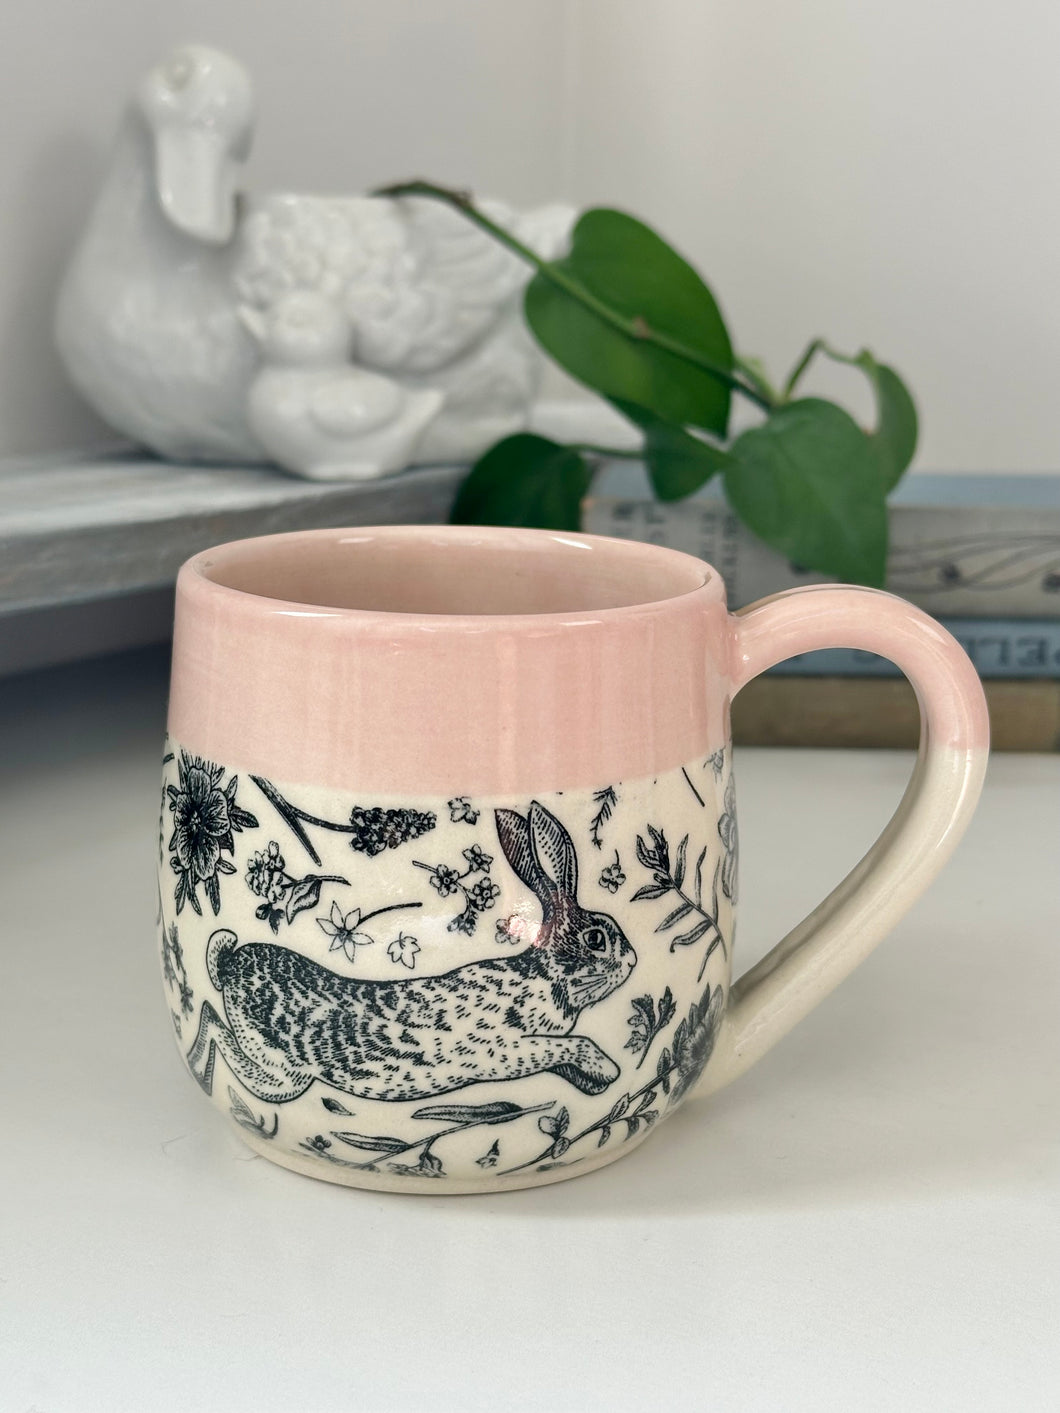 #011 - 16 oz. Bunny mug with pink rim